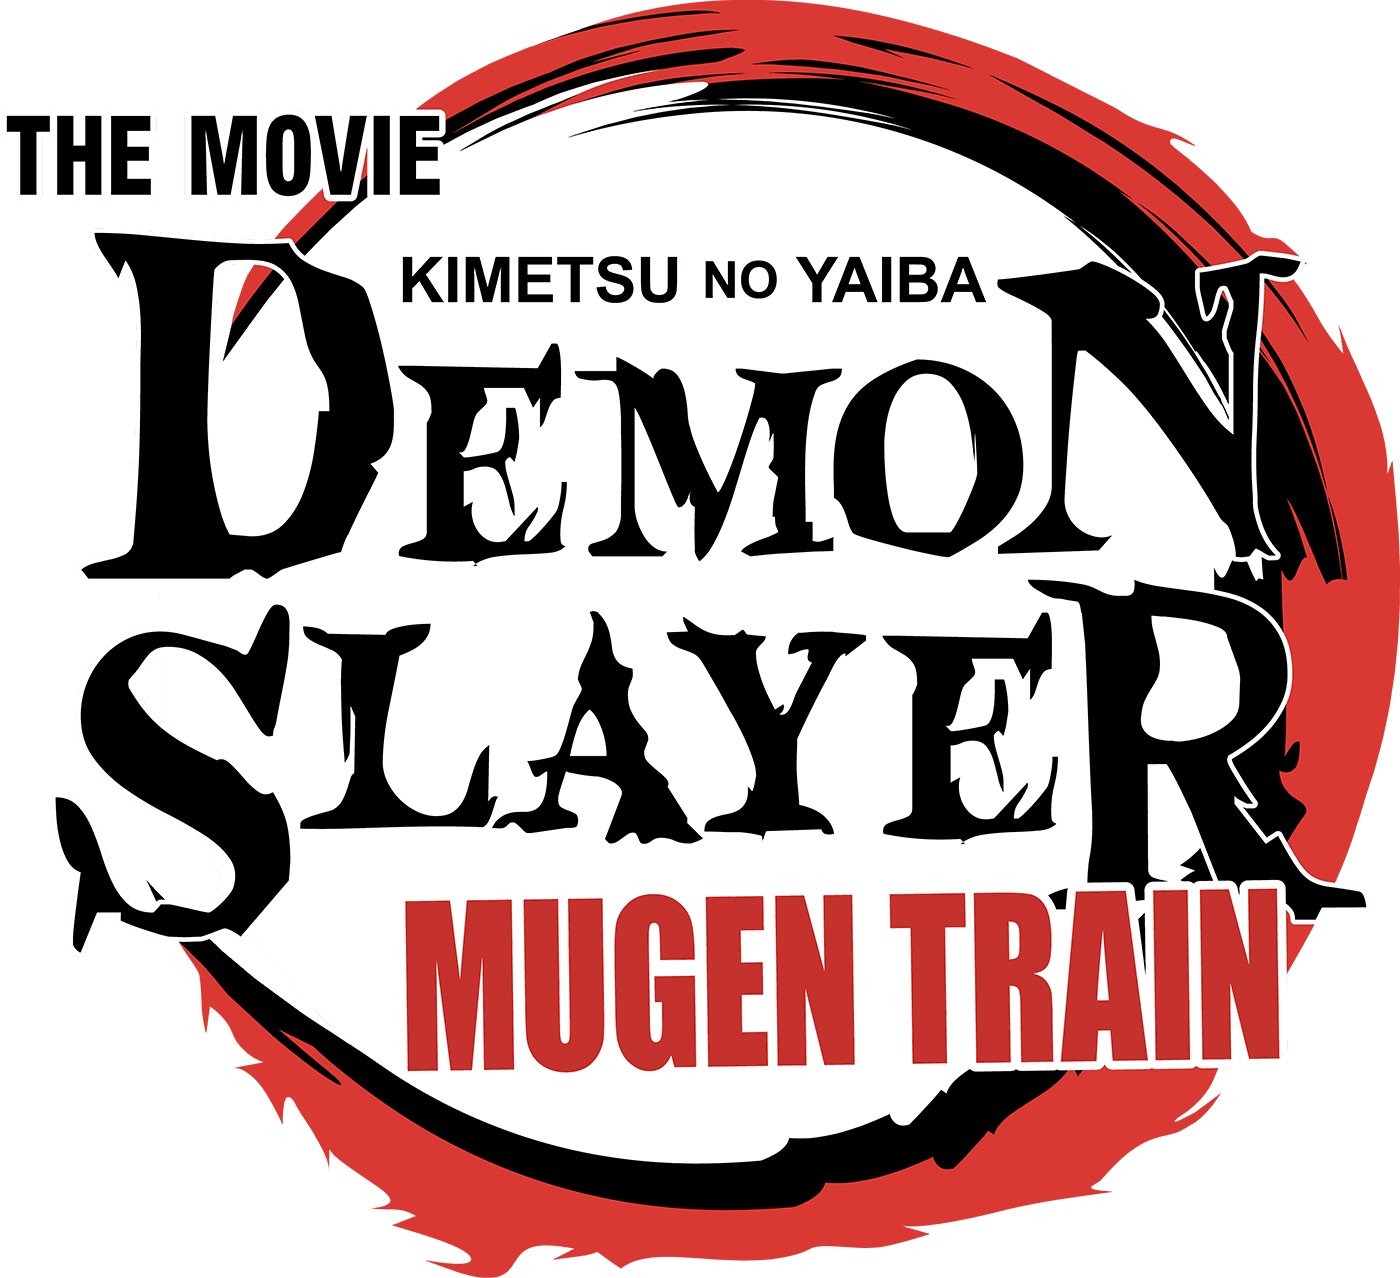 Demon Slayer -Kimetsu no Yaiba- The Movie: Mugen Train logo